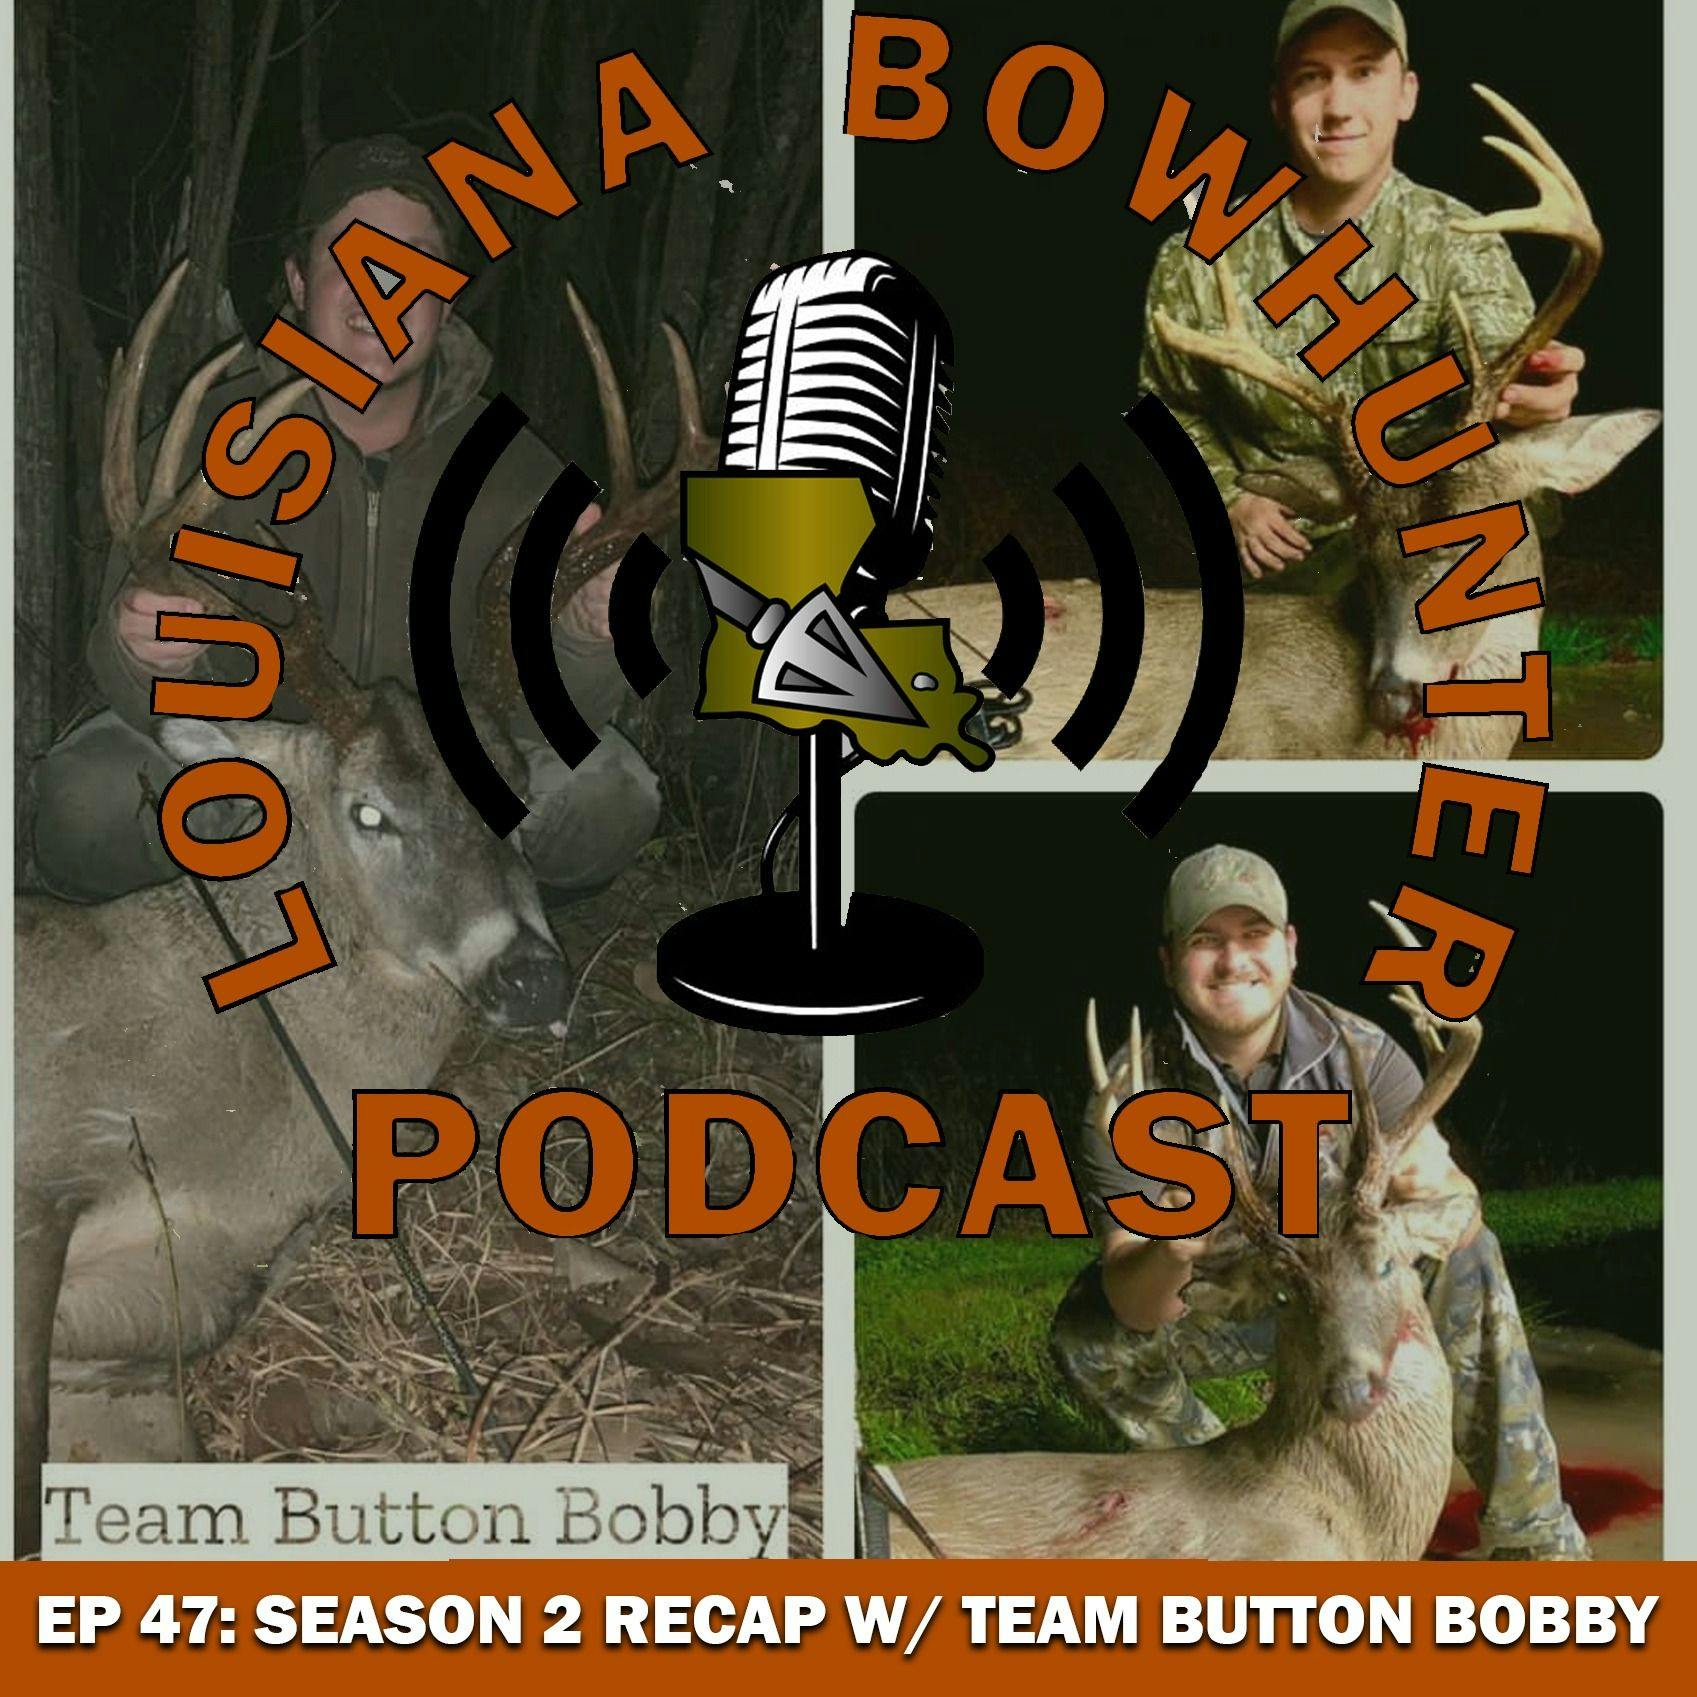 Episode 47: Season 2 Recap with Team Button Bobby